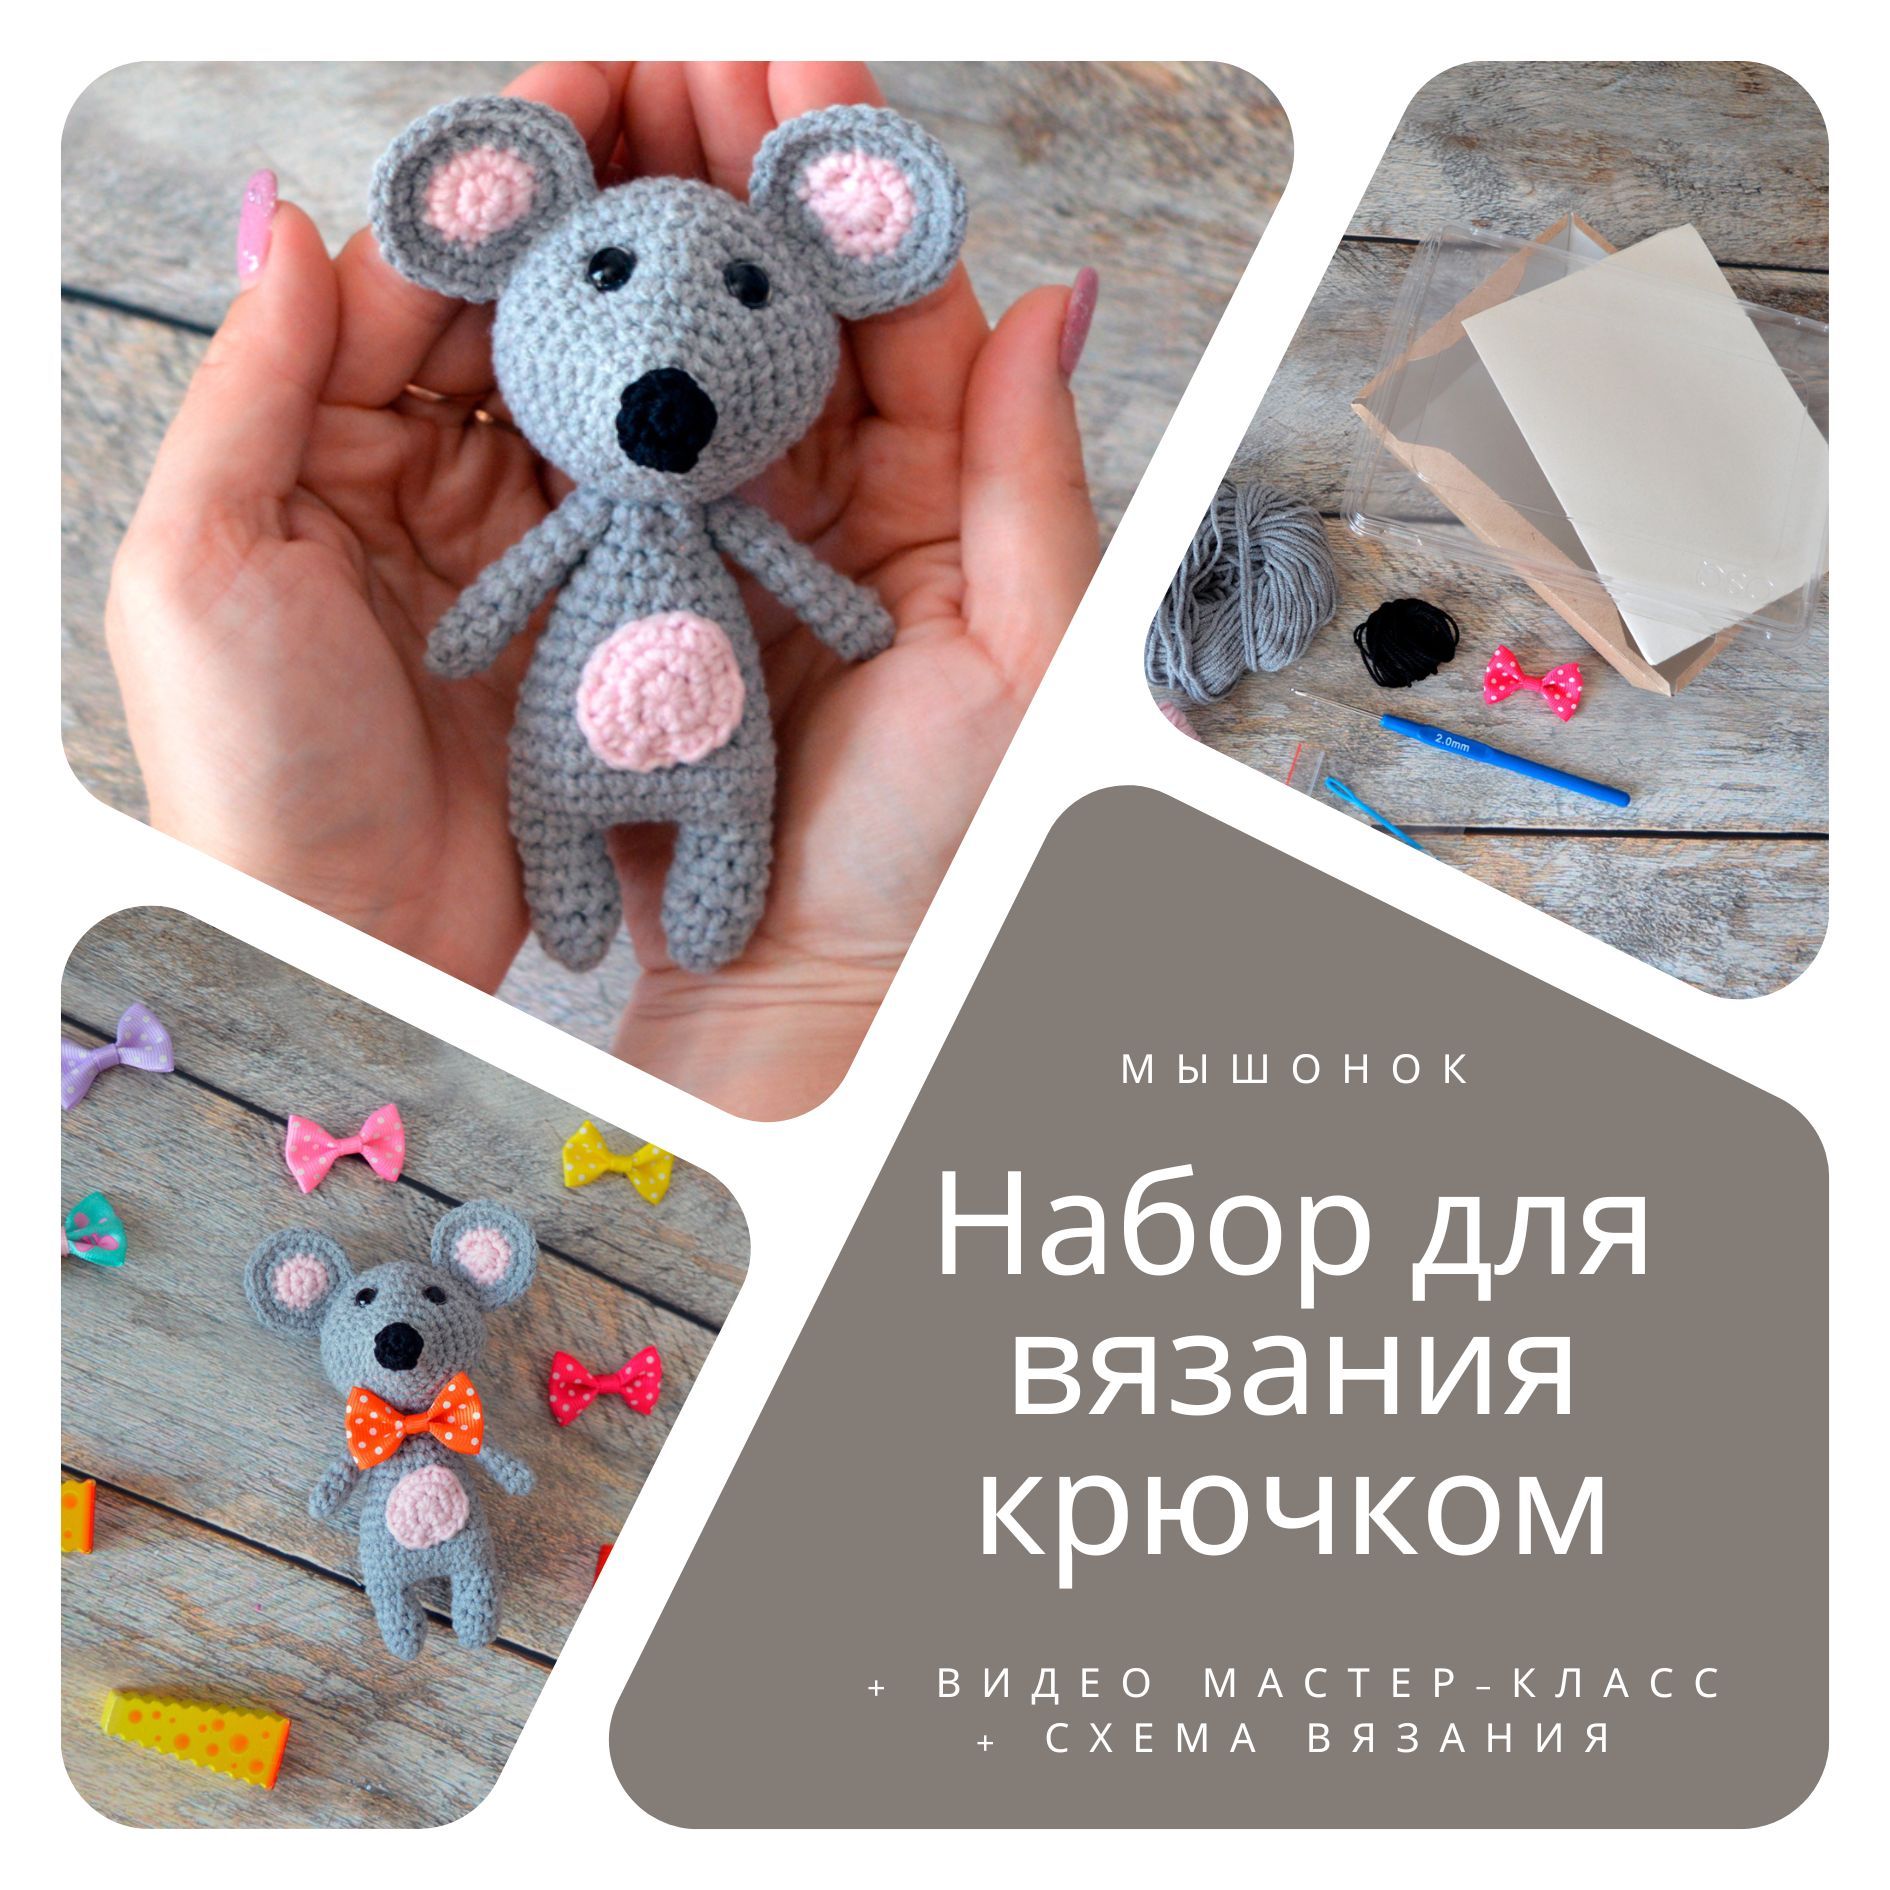 Одежда и игрушки для малышей на aikimaster.ru